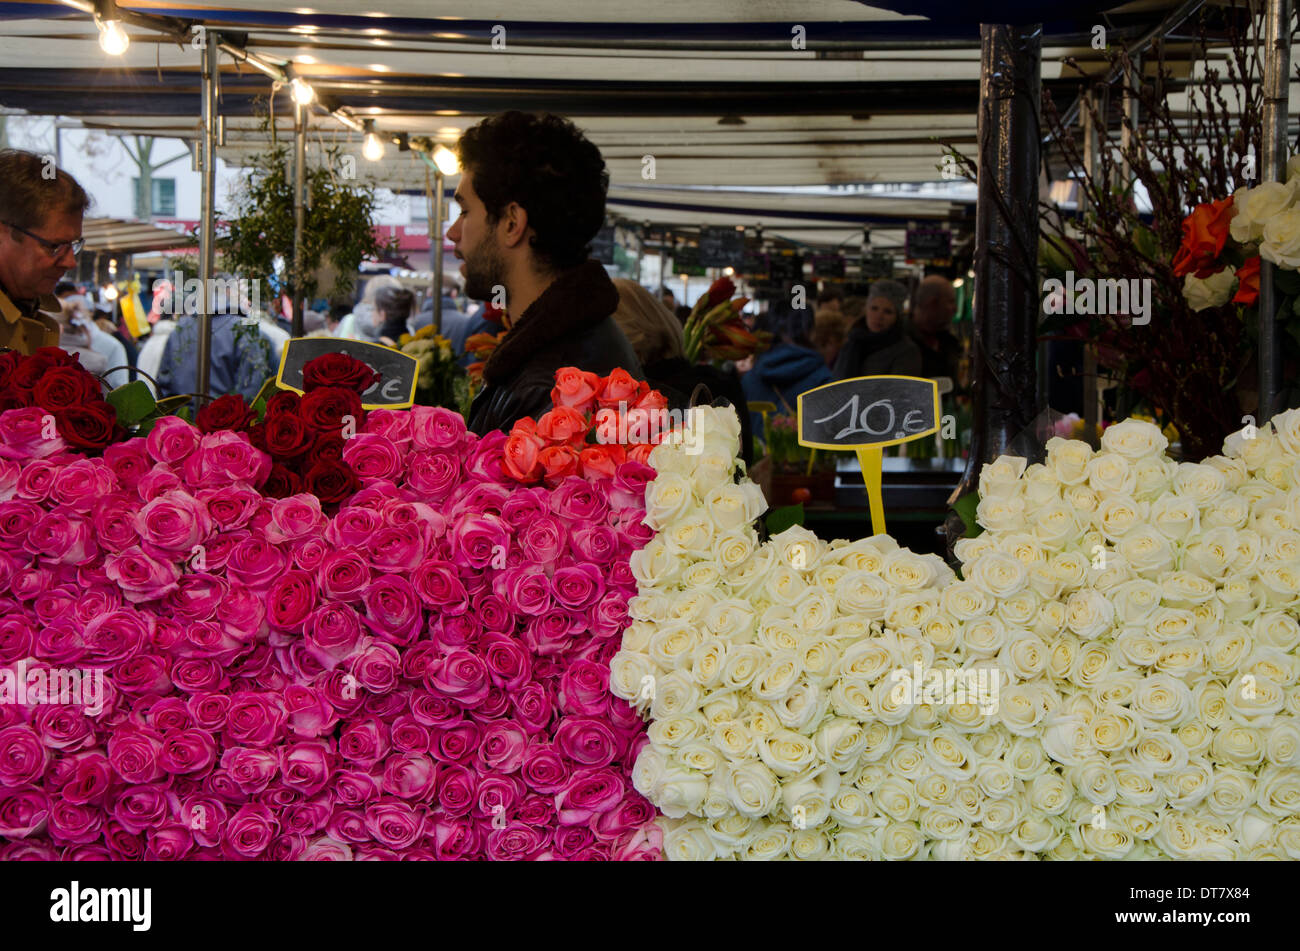 Blume-Stall mit Rosen auf dem Display auf dem Markt am Ort d'aligre, einen lebhaften Markt auf dem Platz Aligre. Paris, Frankreich. Stockfoto